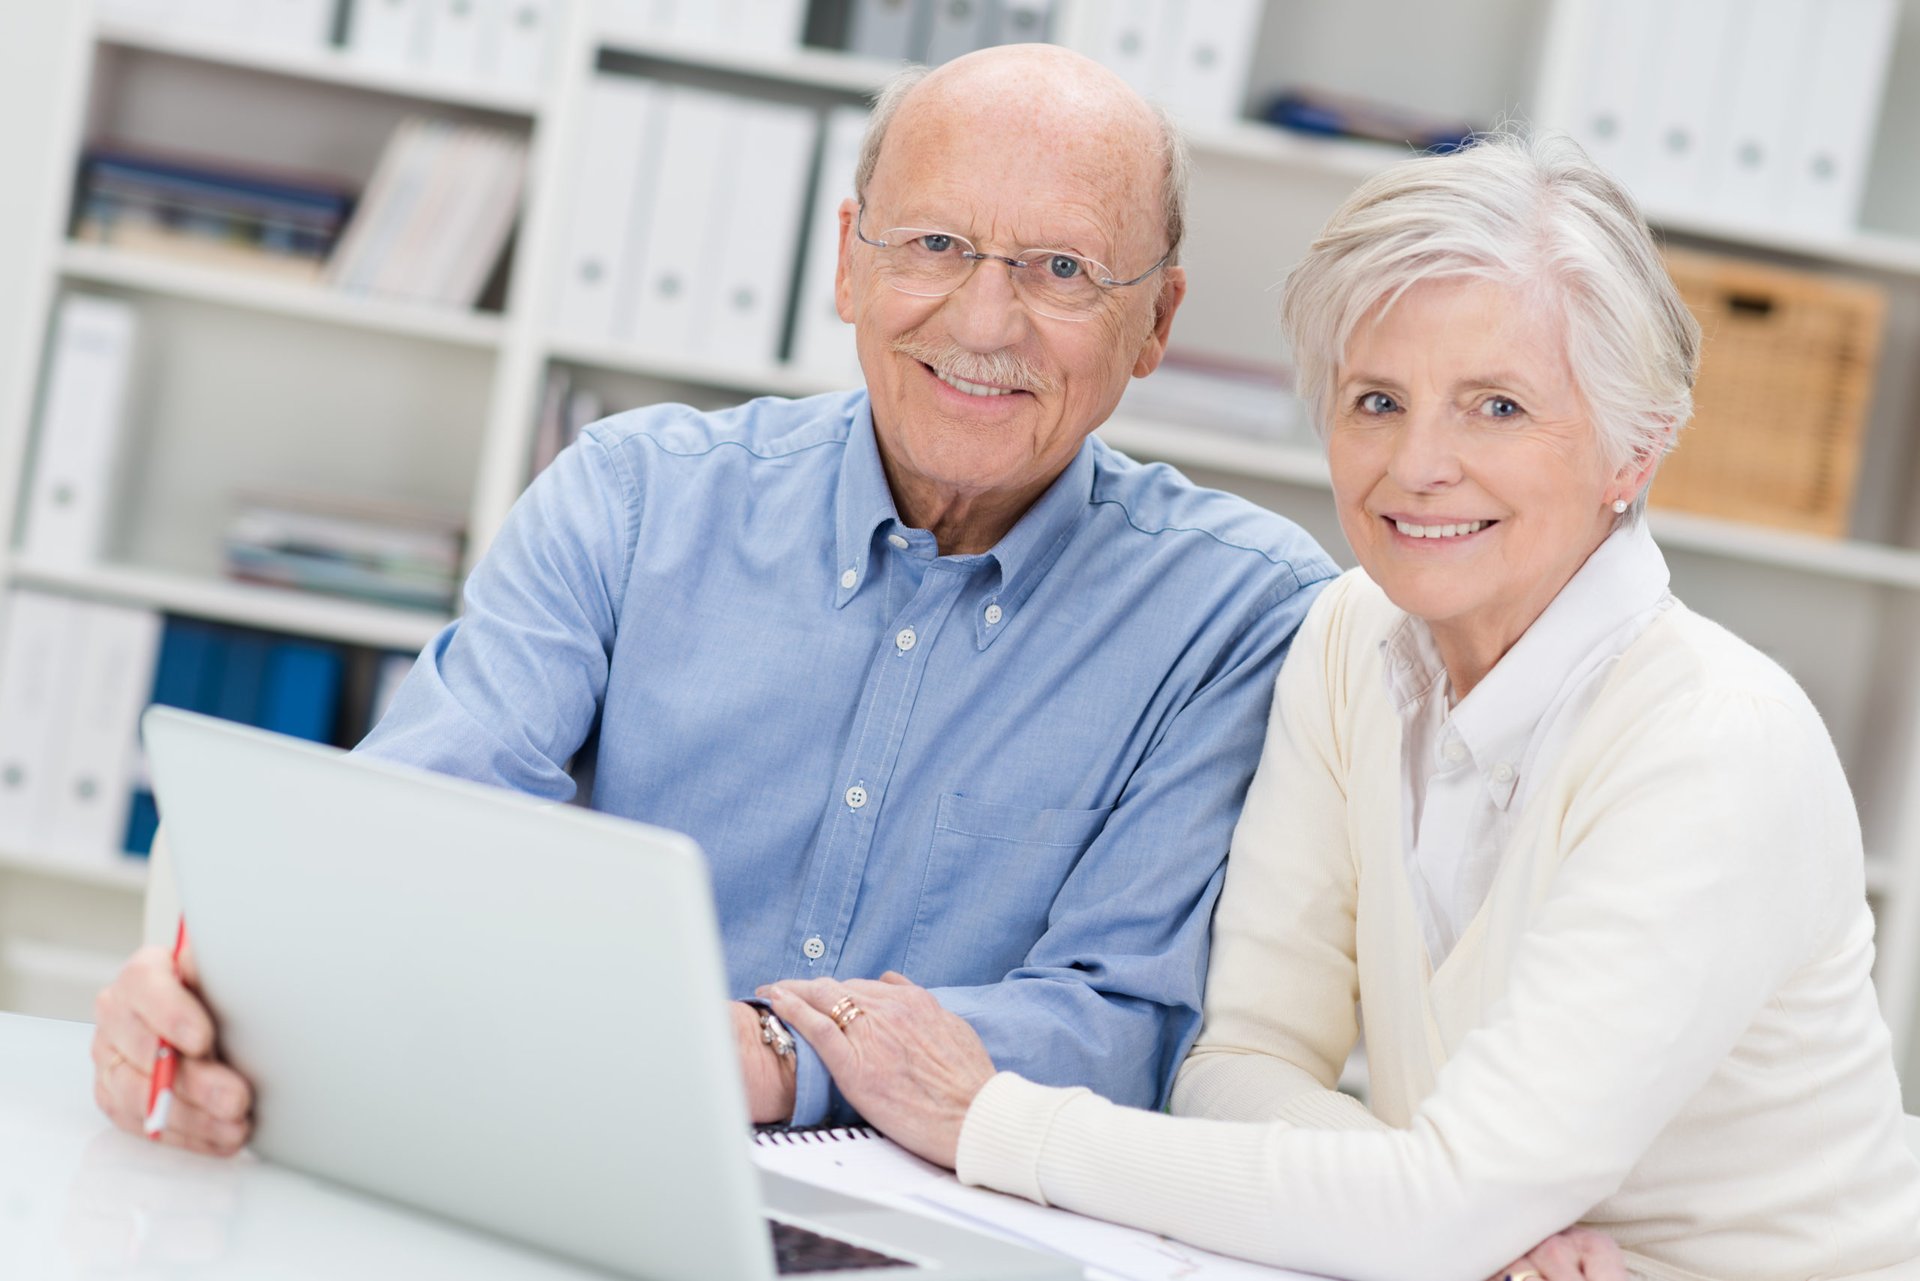 Новое работа для пенсионера. Пожилые люди за компом. Пожилые люди и компьютер. Счастливые пенсионеры. Пожилой человек с ноутбуком.